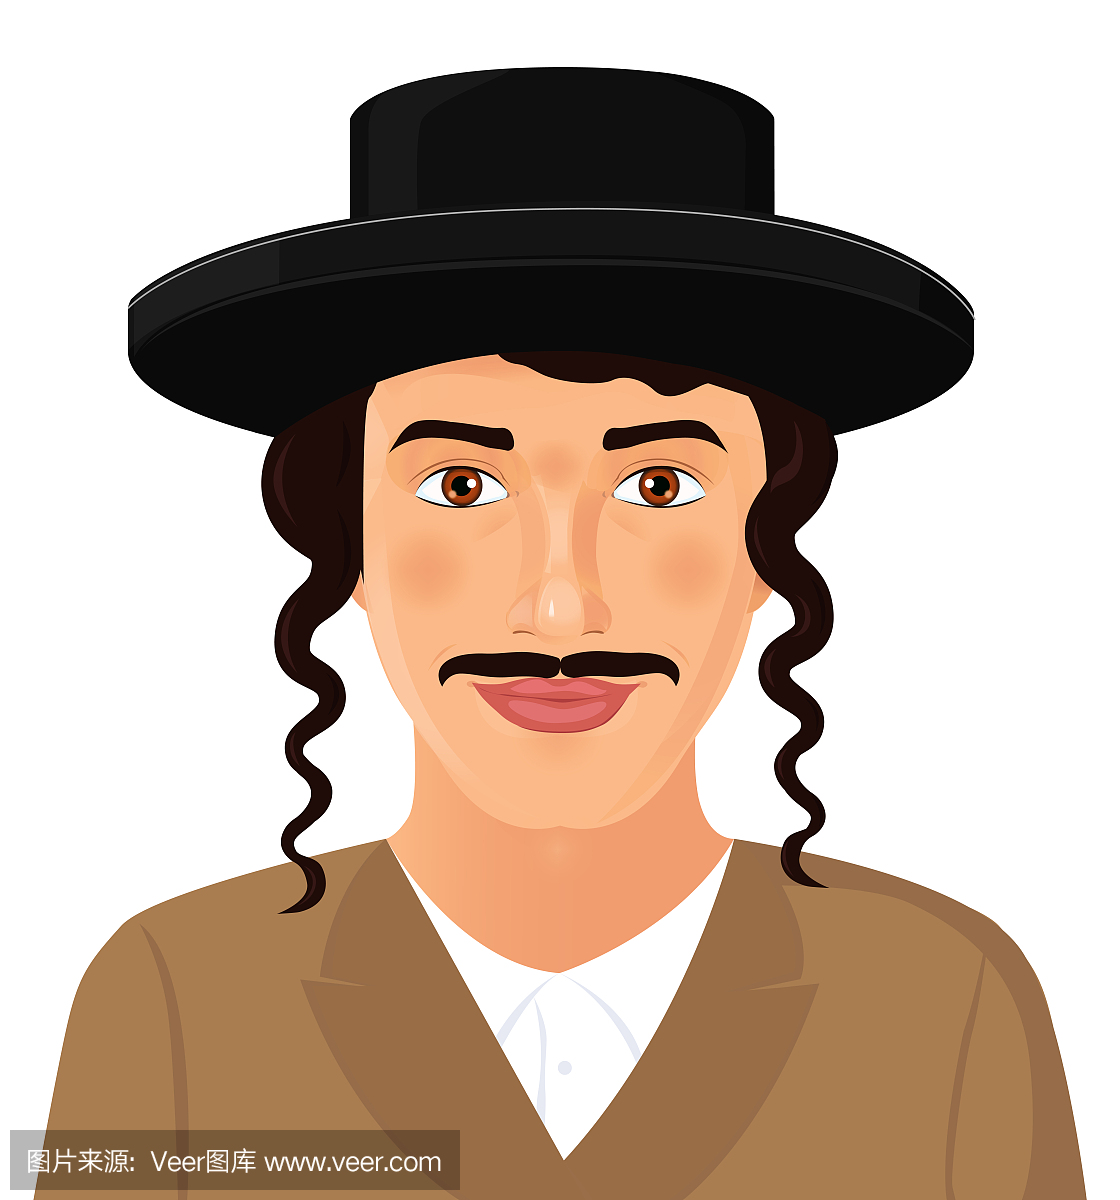 犹太男子脸上的肖像与帽子和胡子穿着黑色西装